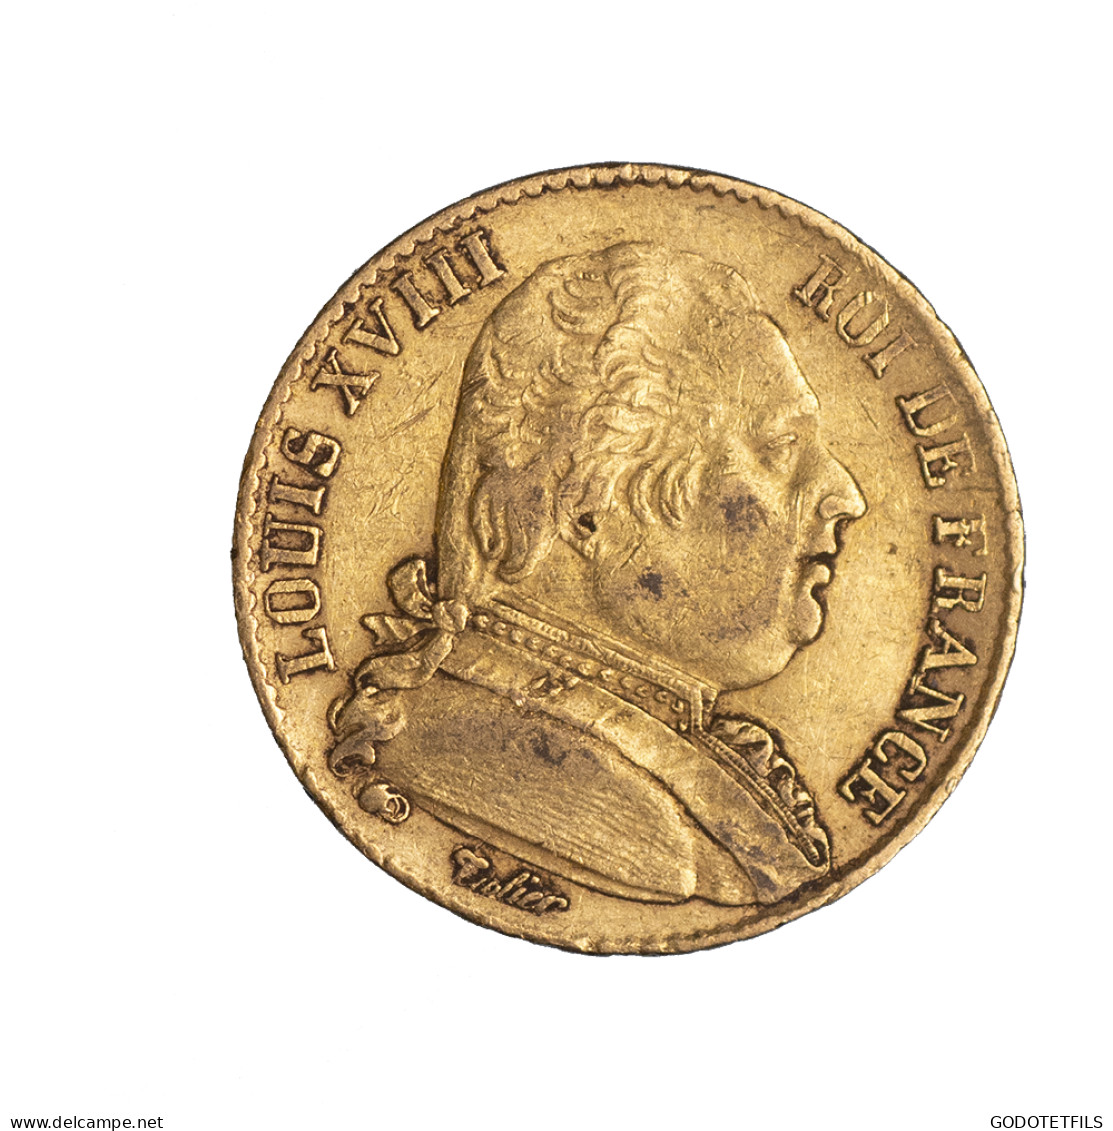 Louis XVIII-20 Francs 1815 Paris - 20 Francs (gold)